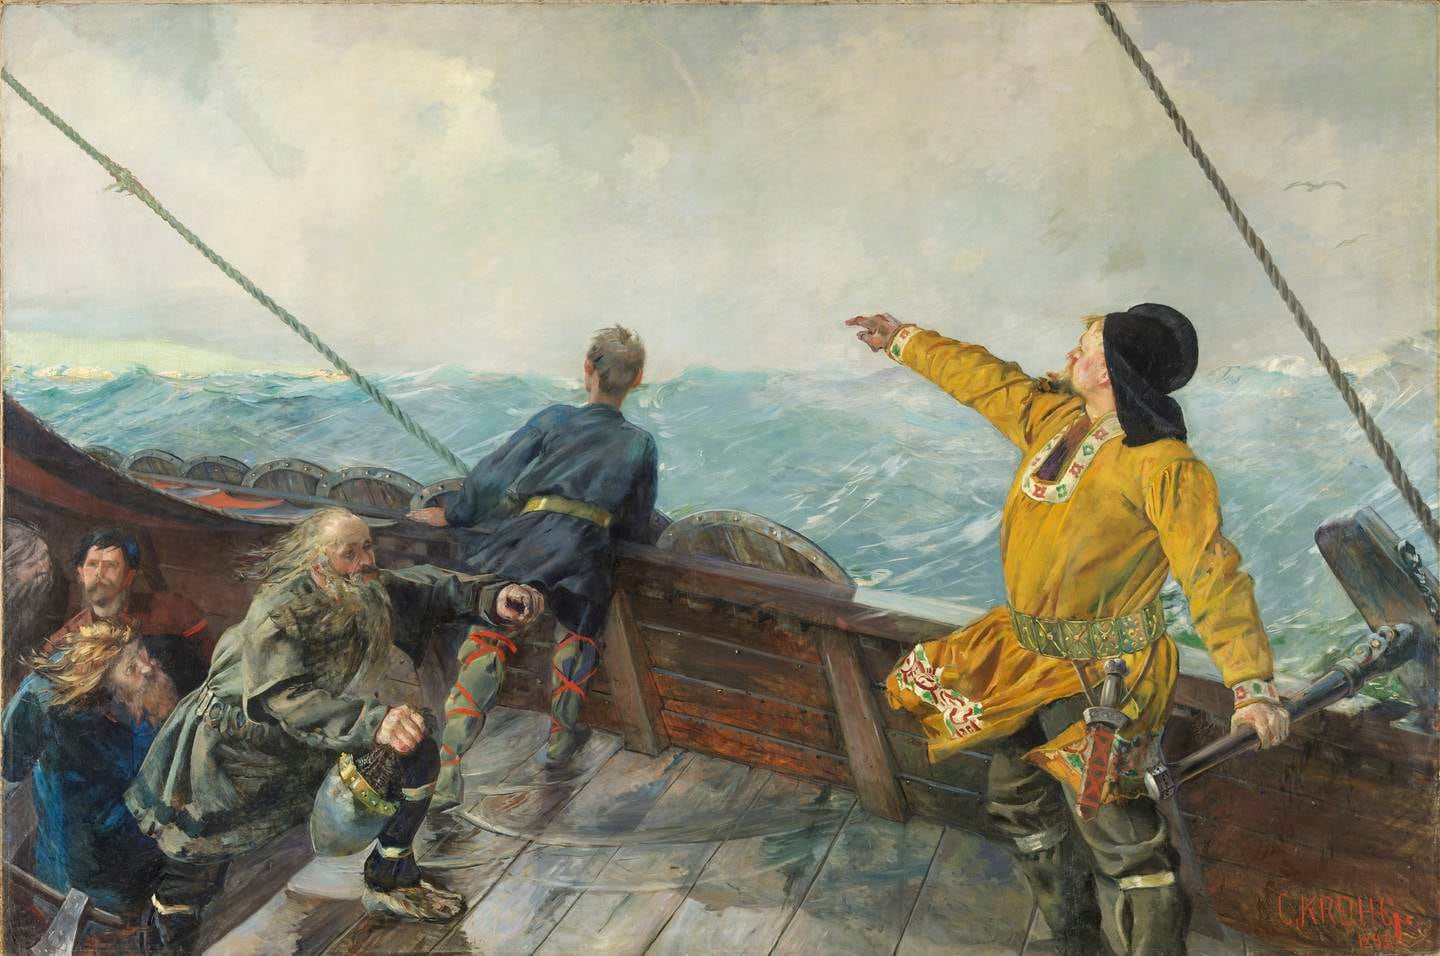 Flere kjente malerier plasseres i kjelleren i det nye Nasjonalmuseet i Oslo som en del av en modernisering av museet. Deriblant Christian Kroghs «Leiv Eiriksson oppdager Amerika».